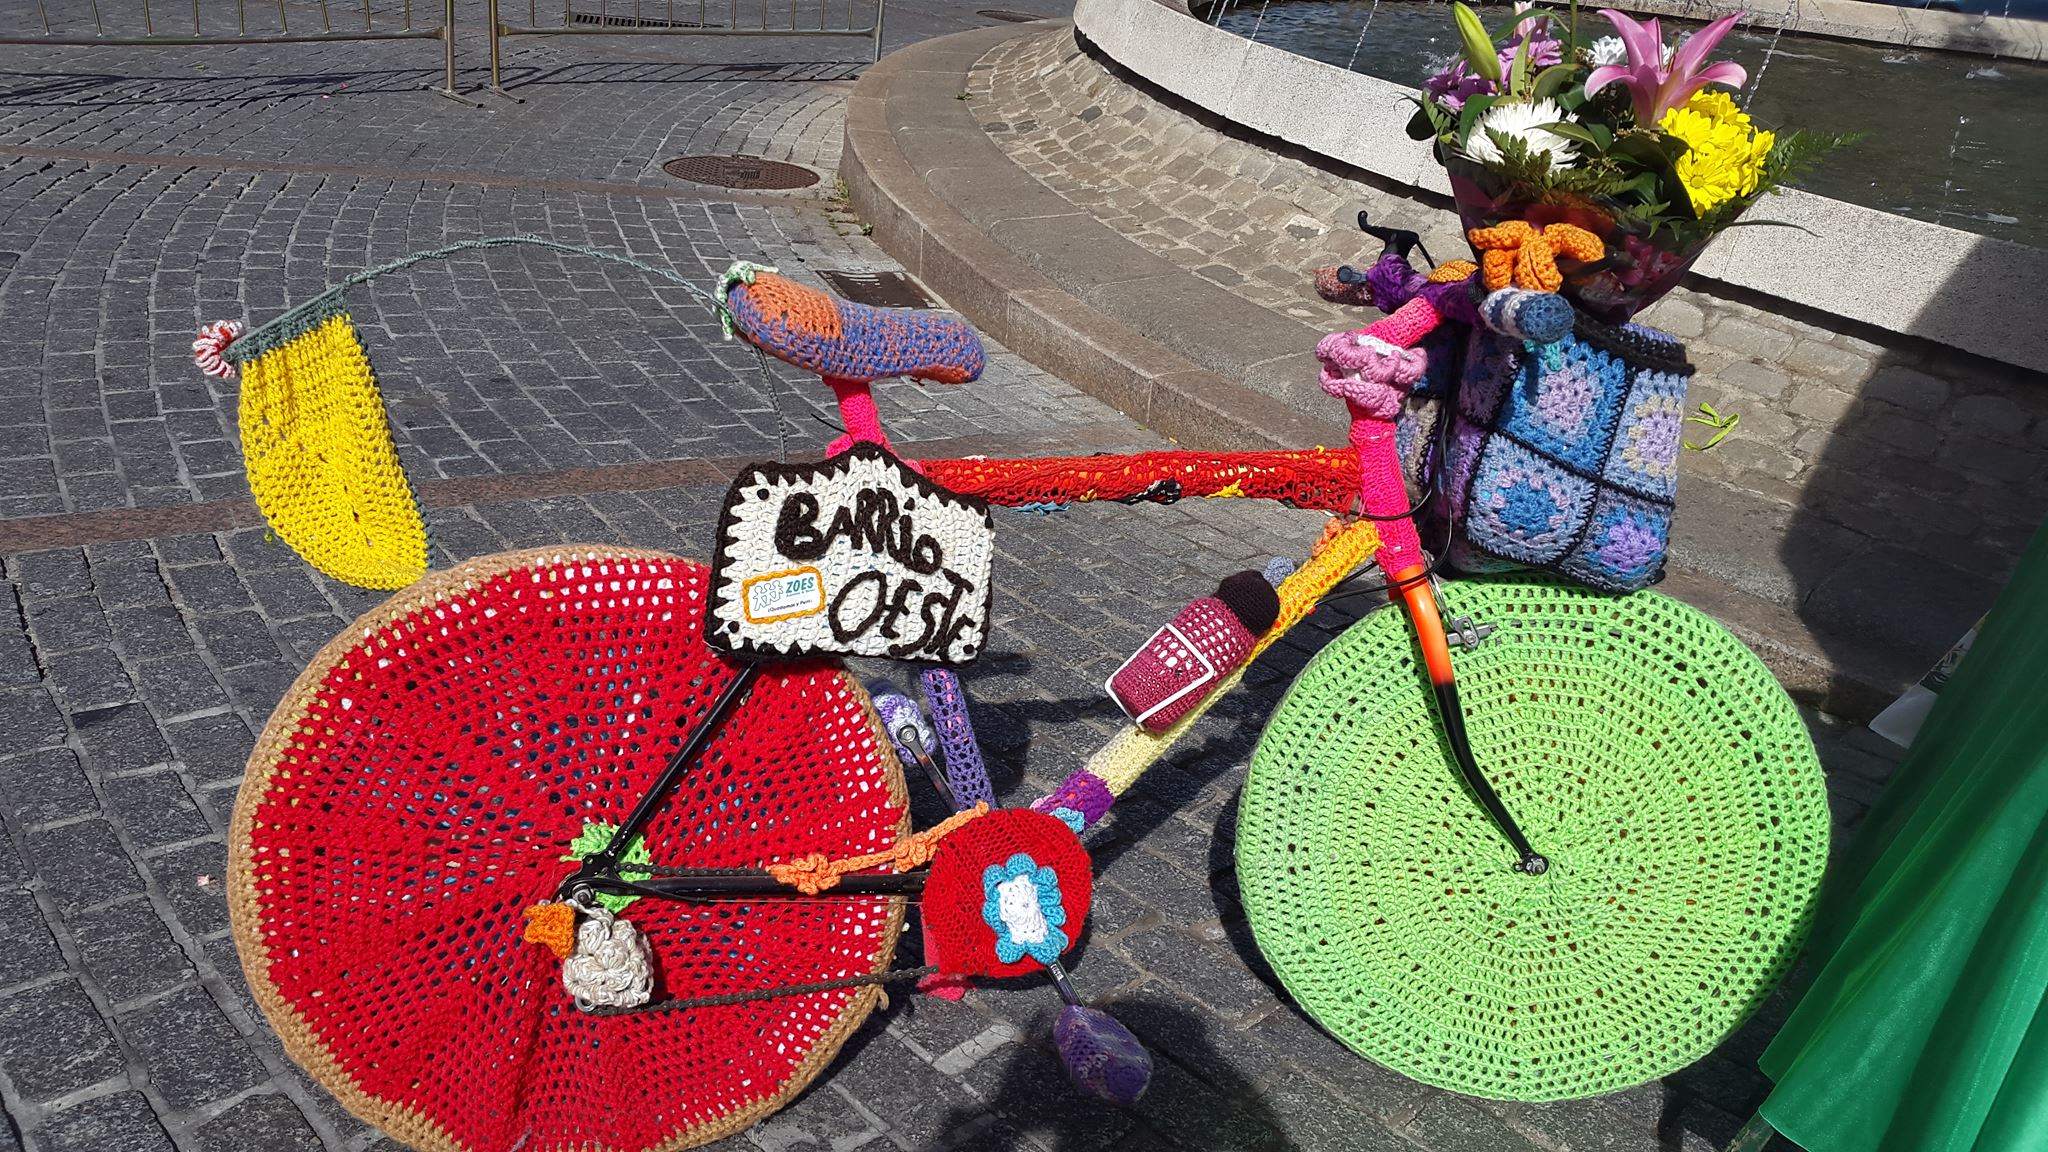 La bicicleta forrada de punto, uno de los símbolos del Barrio